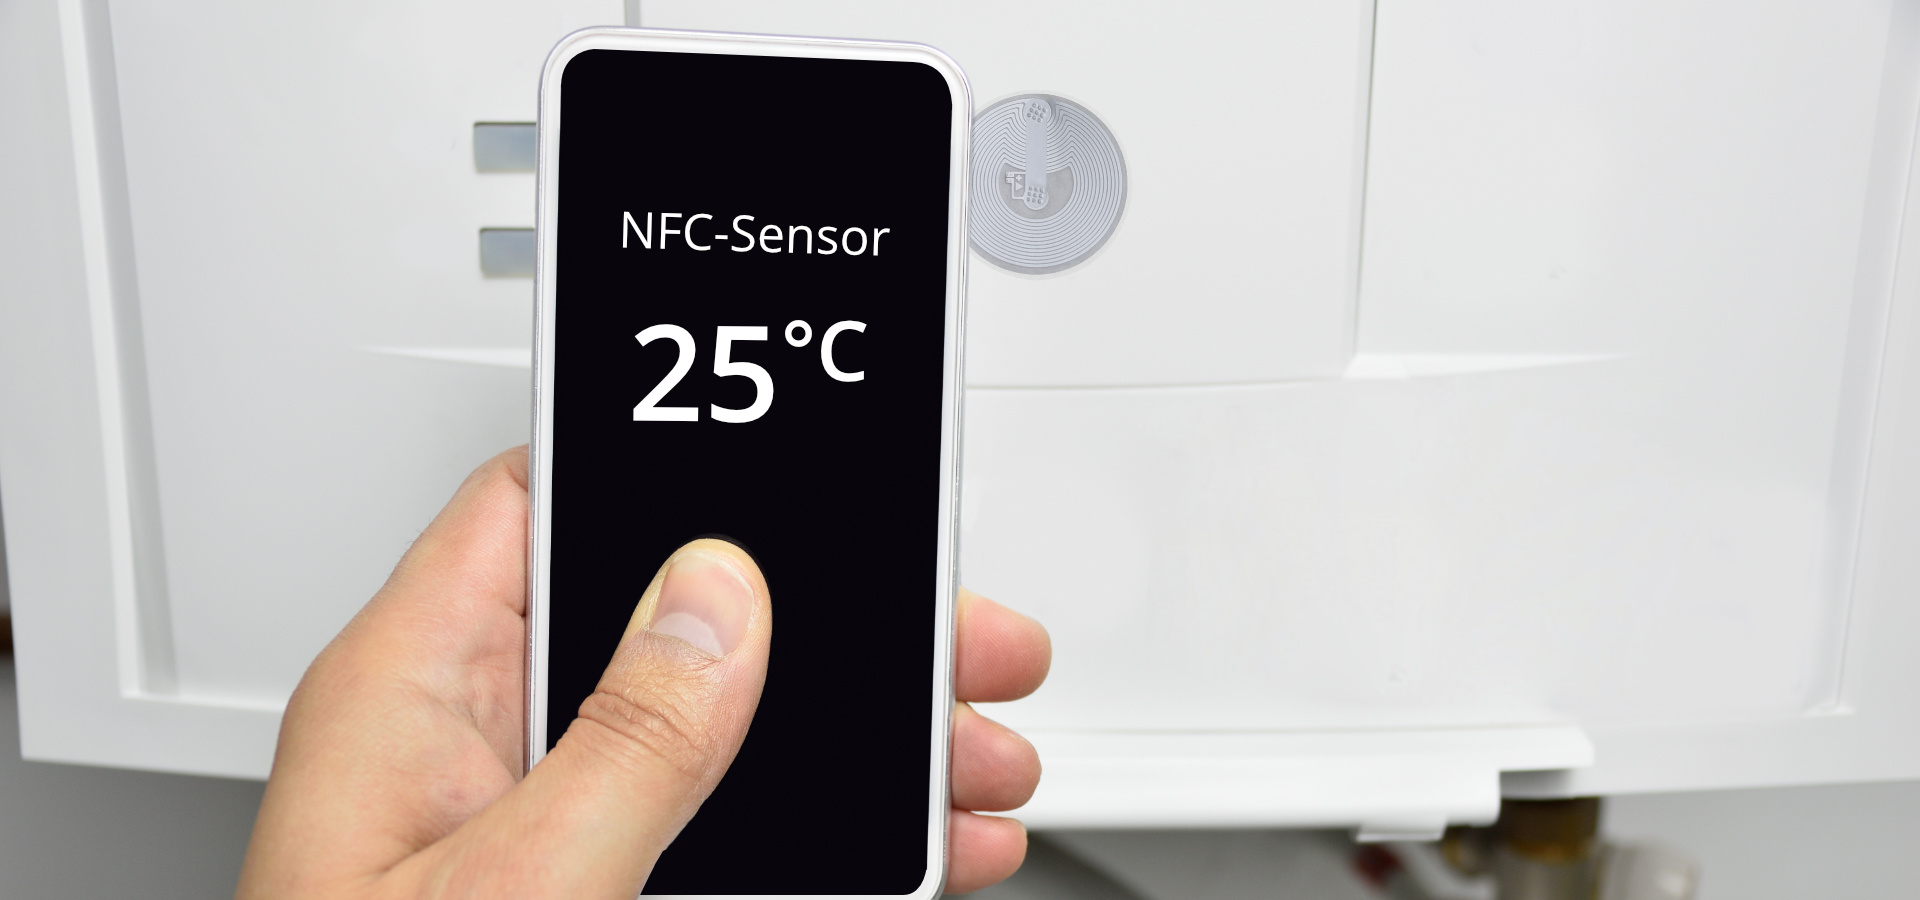 NFC temperature sensor shows 25 degrees Celsius